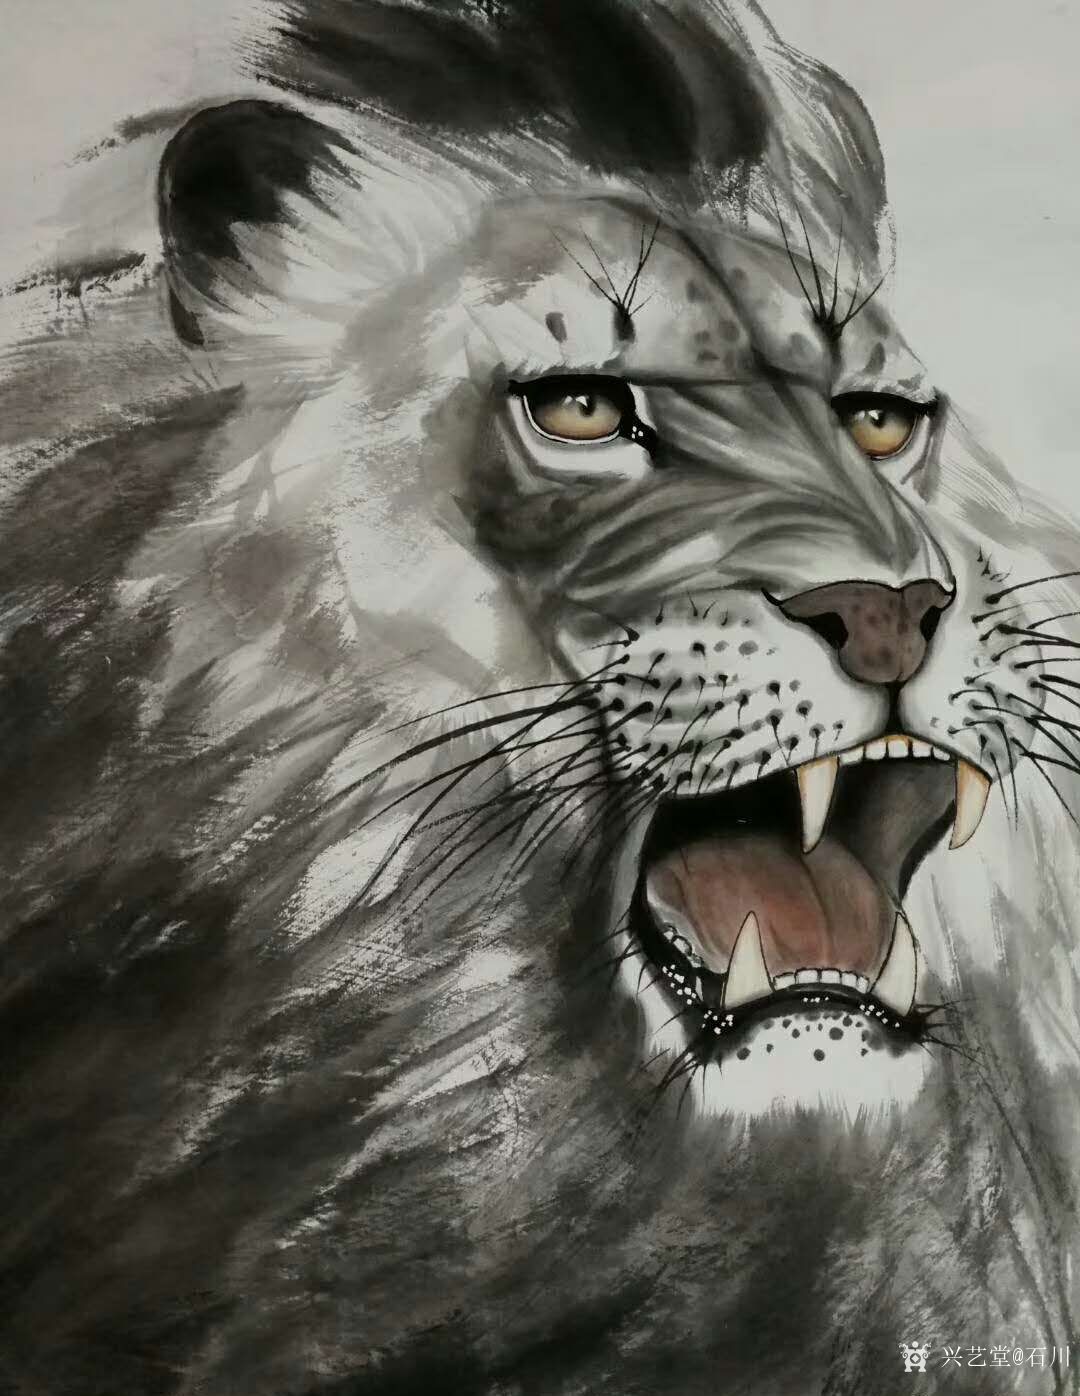 艺术家石川日记:国画动物画系列之雄狮《王者之风》, 成功的作品中